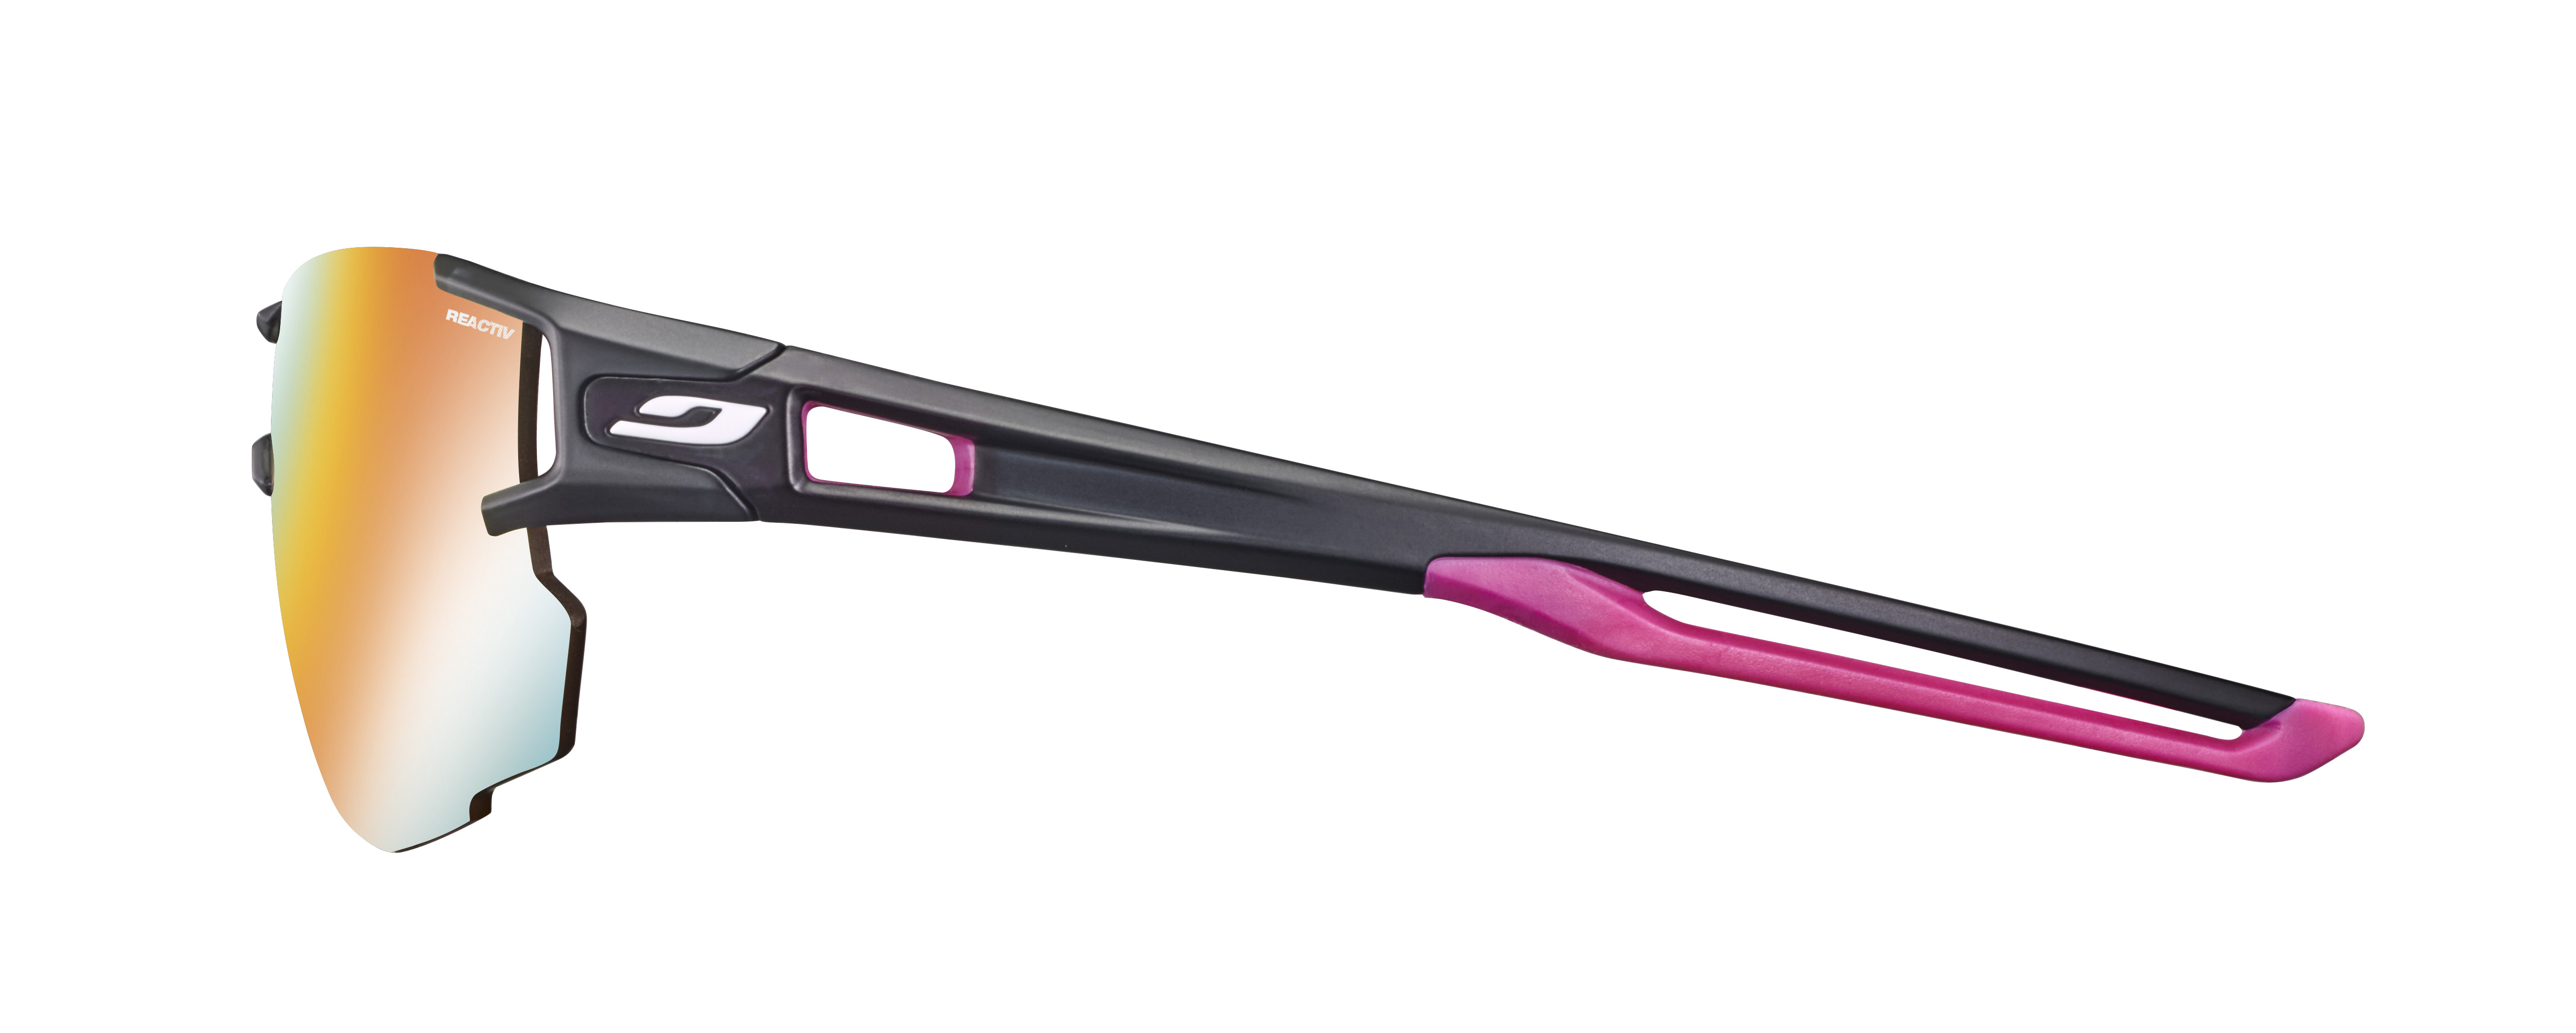 Paire de lunettes de soleil Julbo Js496 aerolite couleur rose - Côté à angle - Doyle